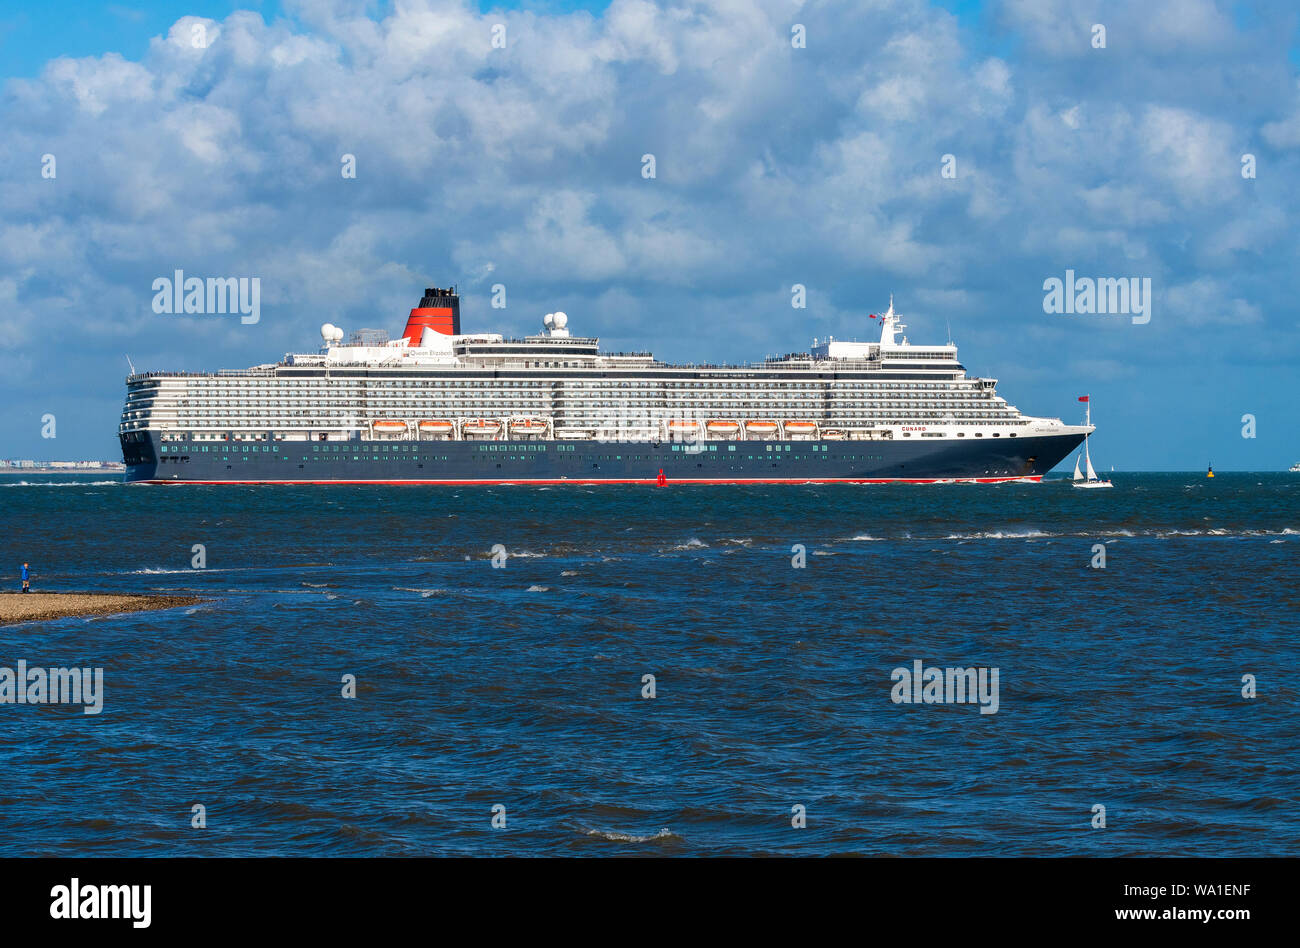 À base de Southampton Queen Elizabeth croisière Cunard Queen Victoria,phare de la Cunard, le Queen Mary2 on appelle les 3 Queens partent ensemble sur la marée Banque D'Images